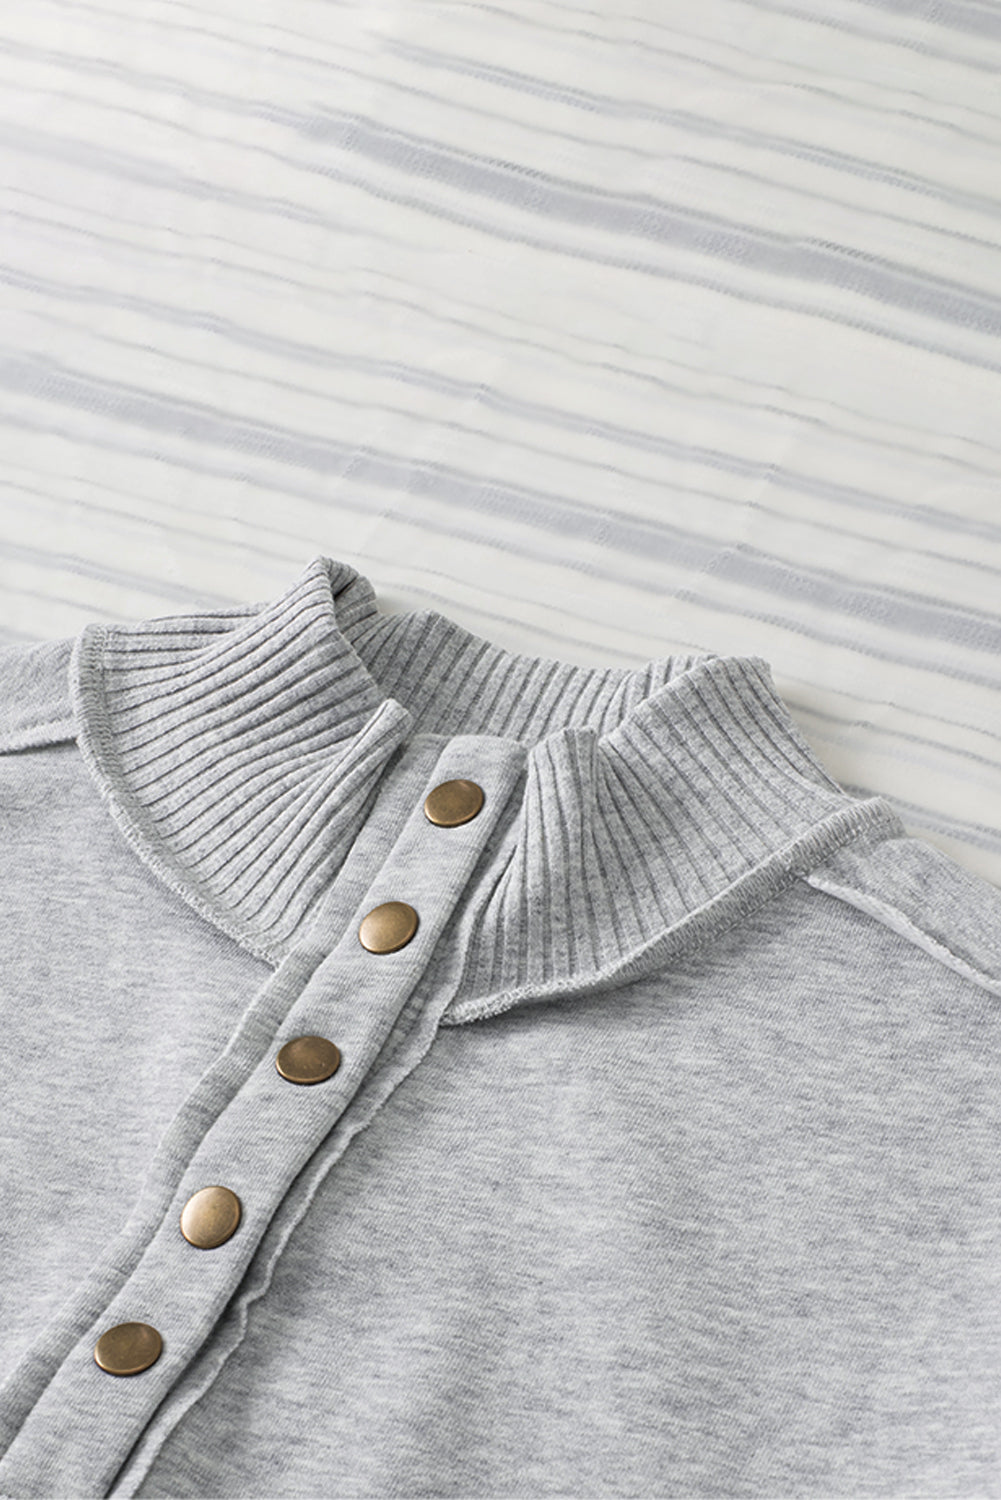 Hellrosa Sweatshirt mit geripptem Saum, Druckknopfausschnitt und Tasche